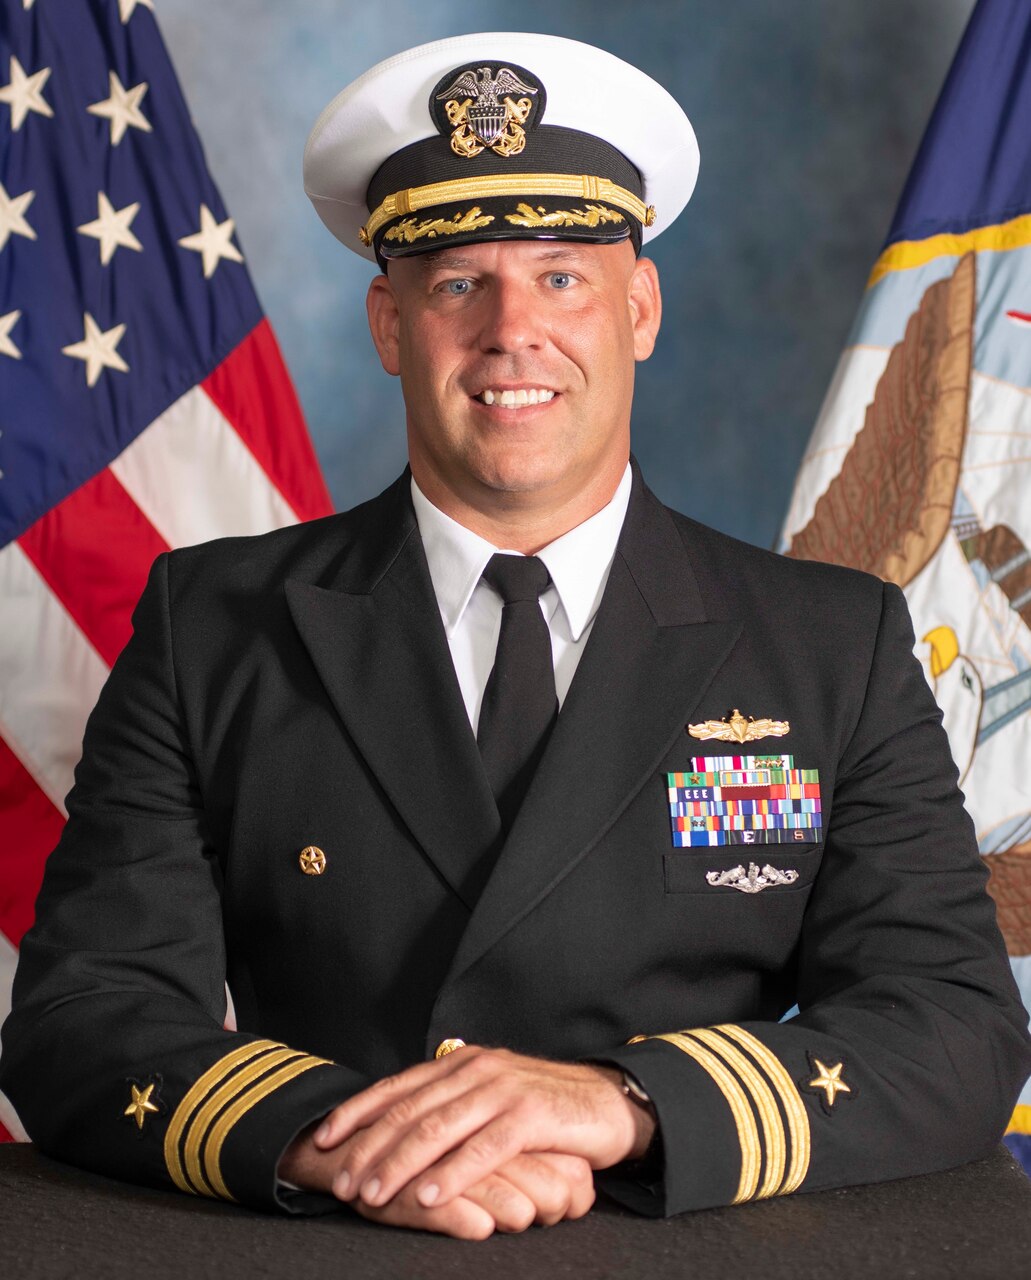 Commander Michael J. Welgan